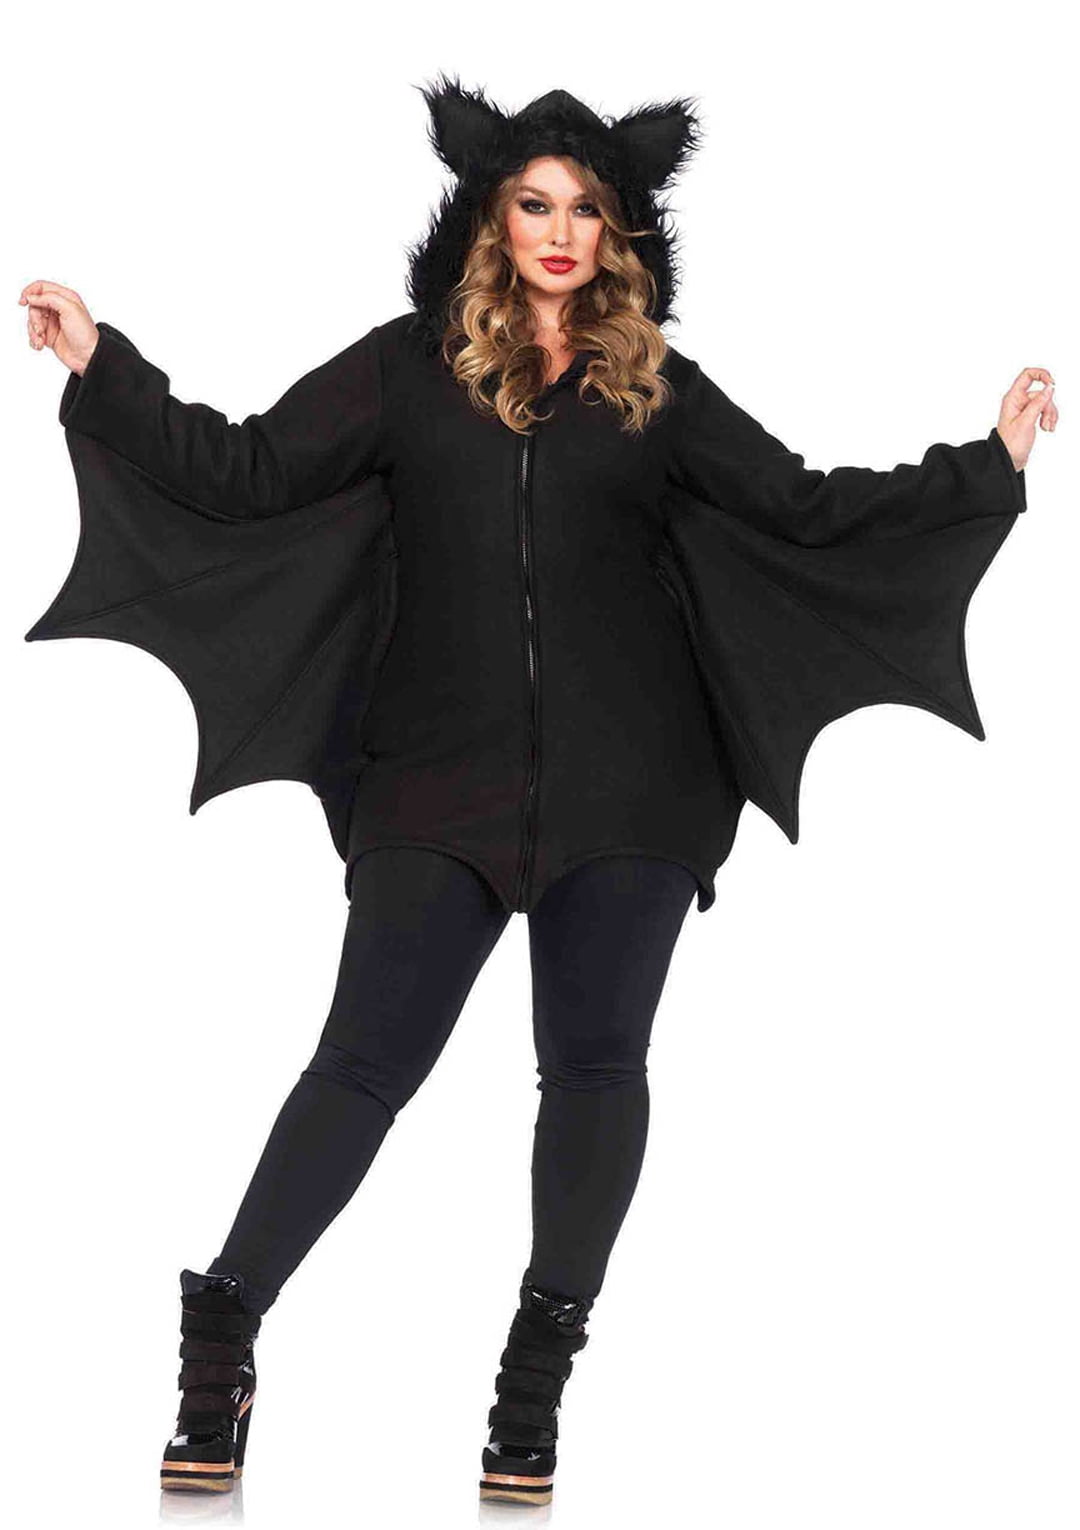 Plus-Size Cozy Bat Halloween Costume ...